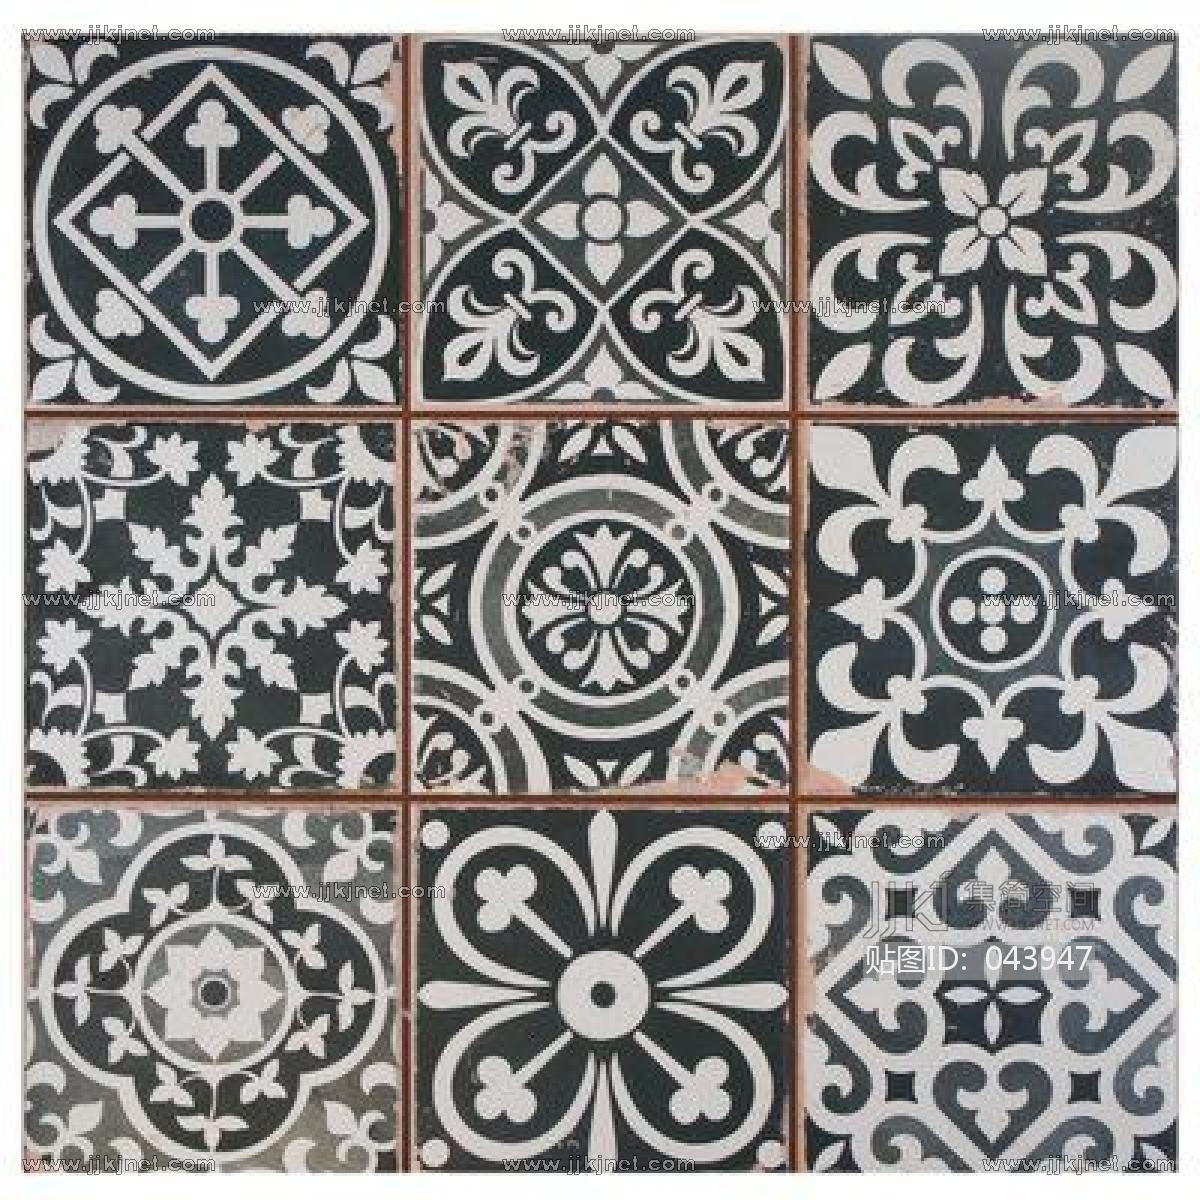 地中海风格简约时尚瓷砖装修效果图-陶瓷网